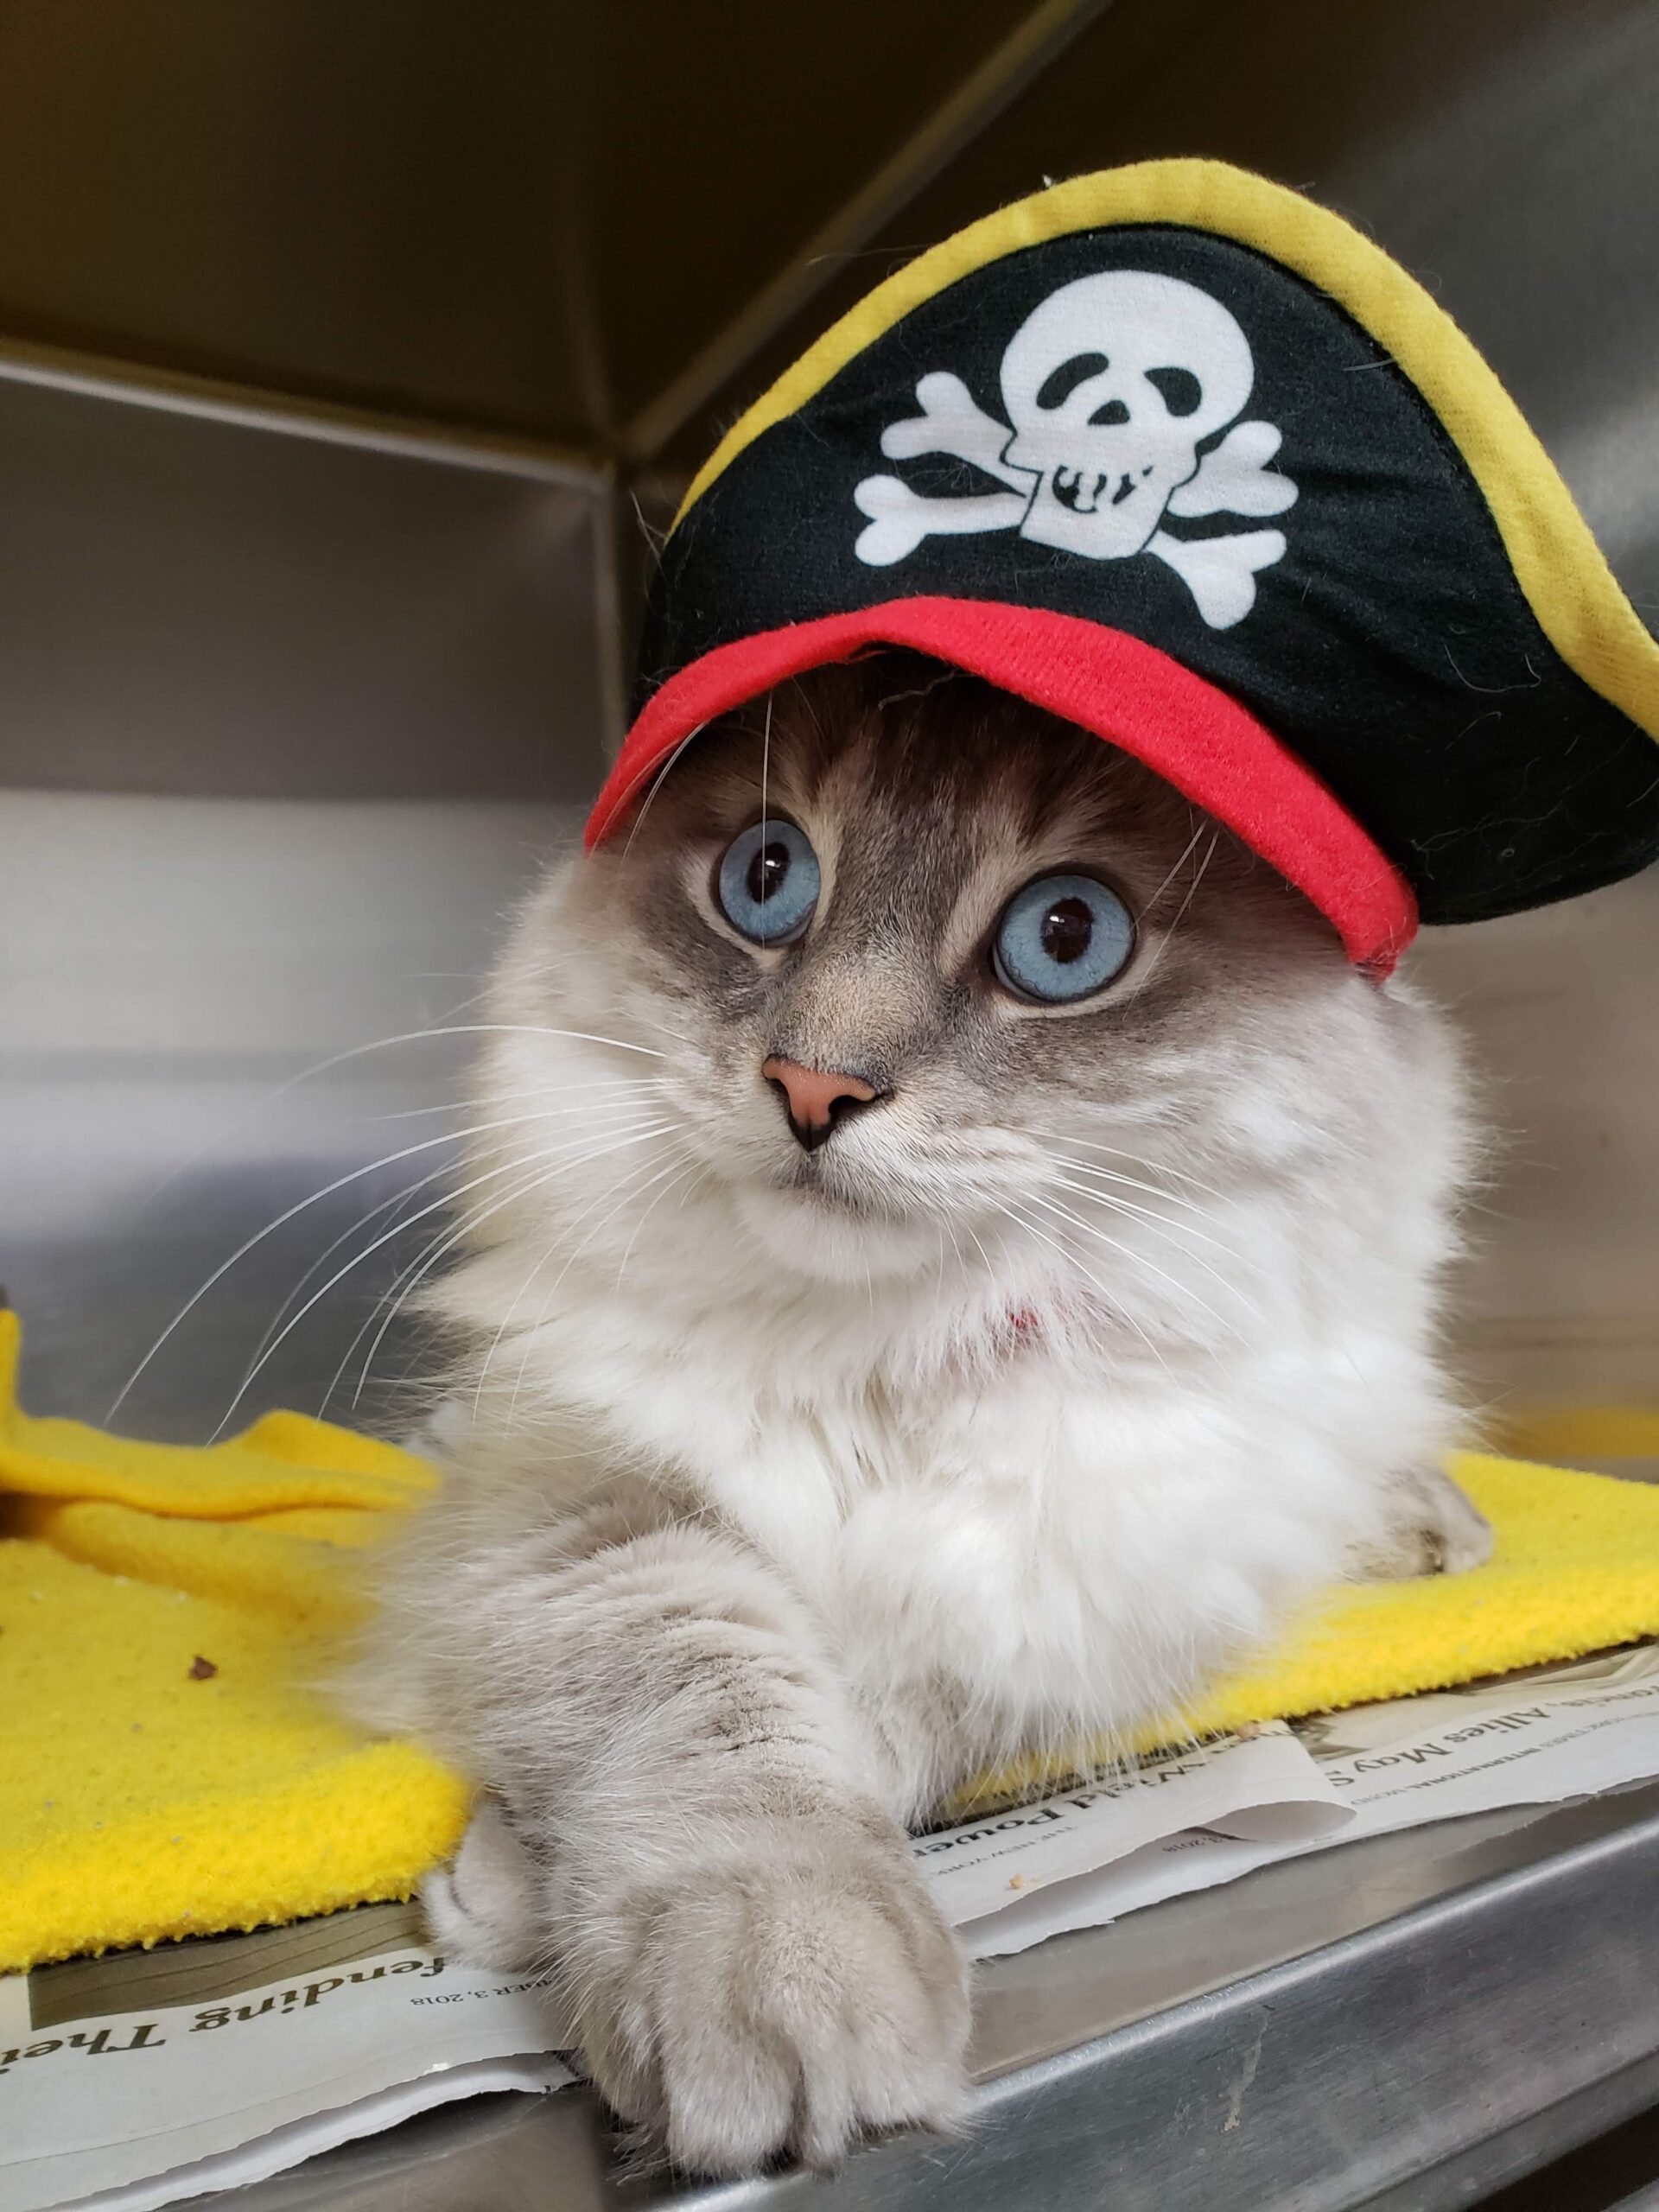 A cat wearing a pirate hat